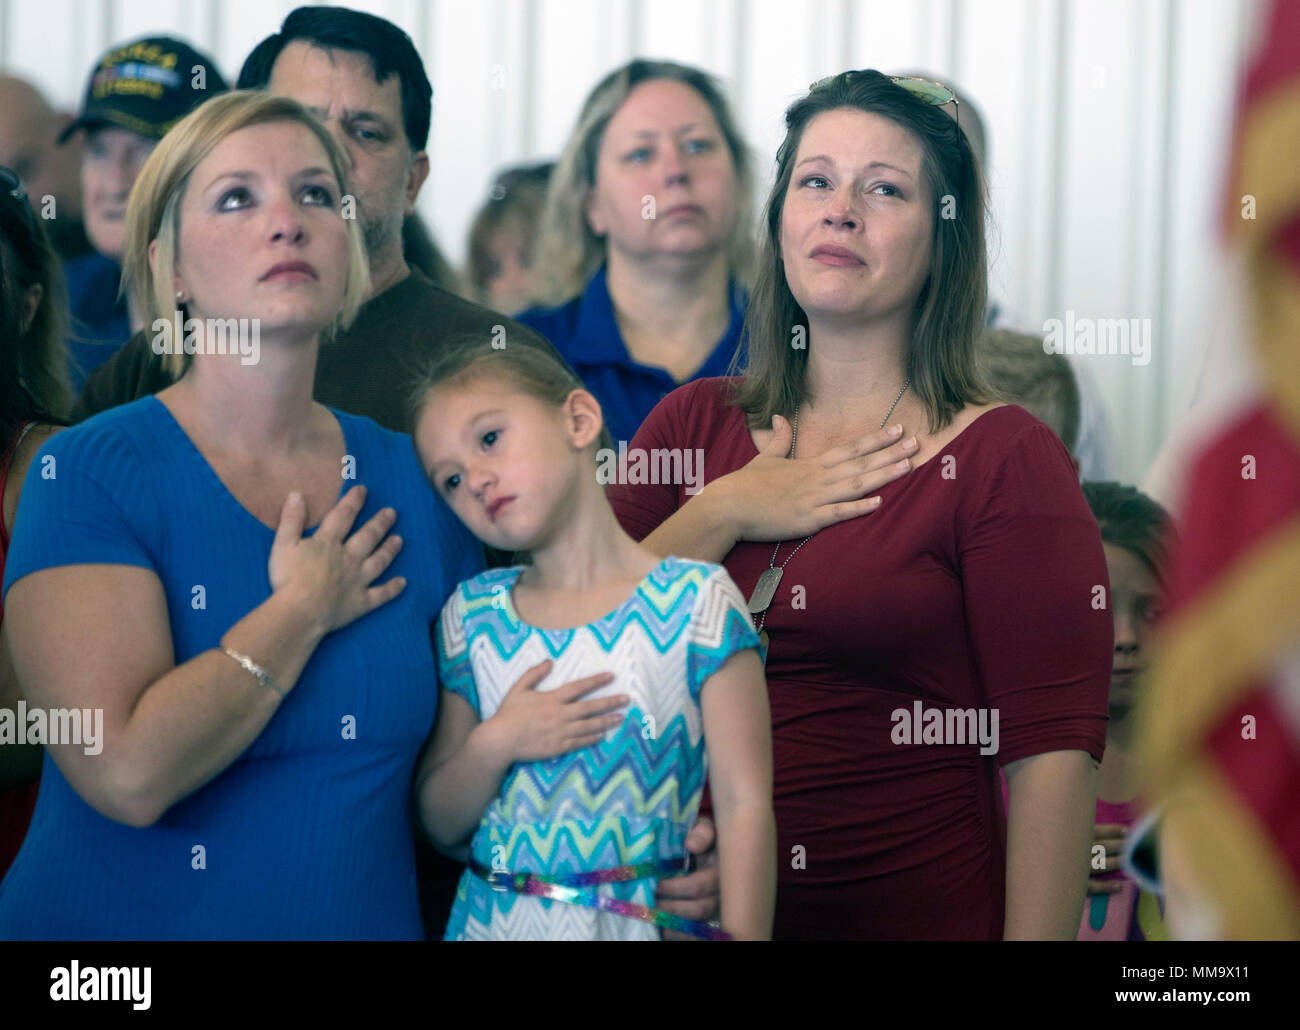 NO ARRODILLADO AQUÍ - Ashley Kennedy de Champaign sostiene su mano sobre su  corazón y mira la bandera americana durante la reproducción del himno  nacional. El esposo de Kennedy, Kraig Kennedy, está